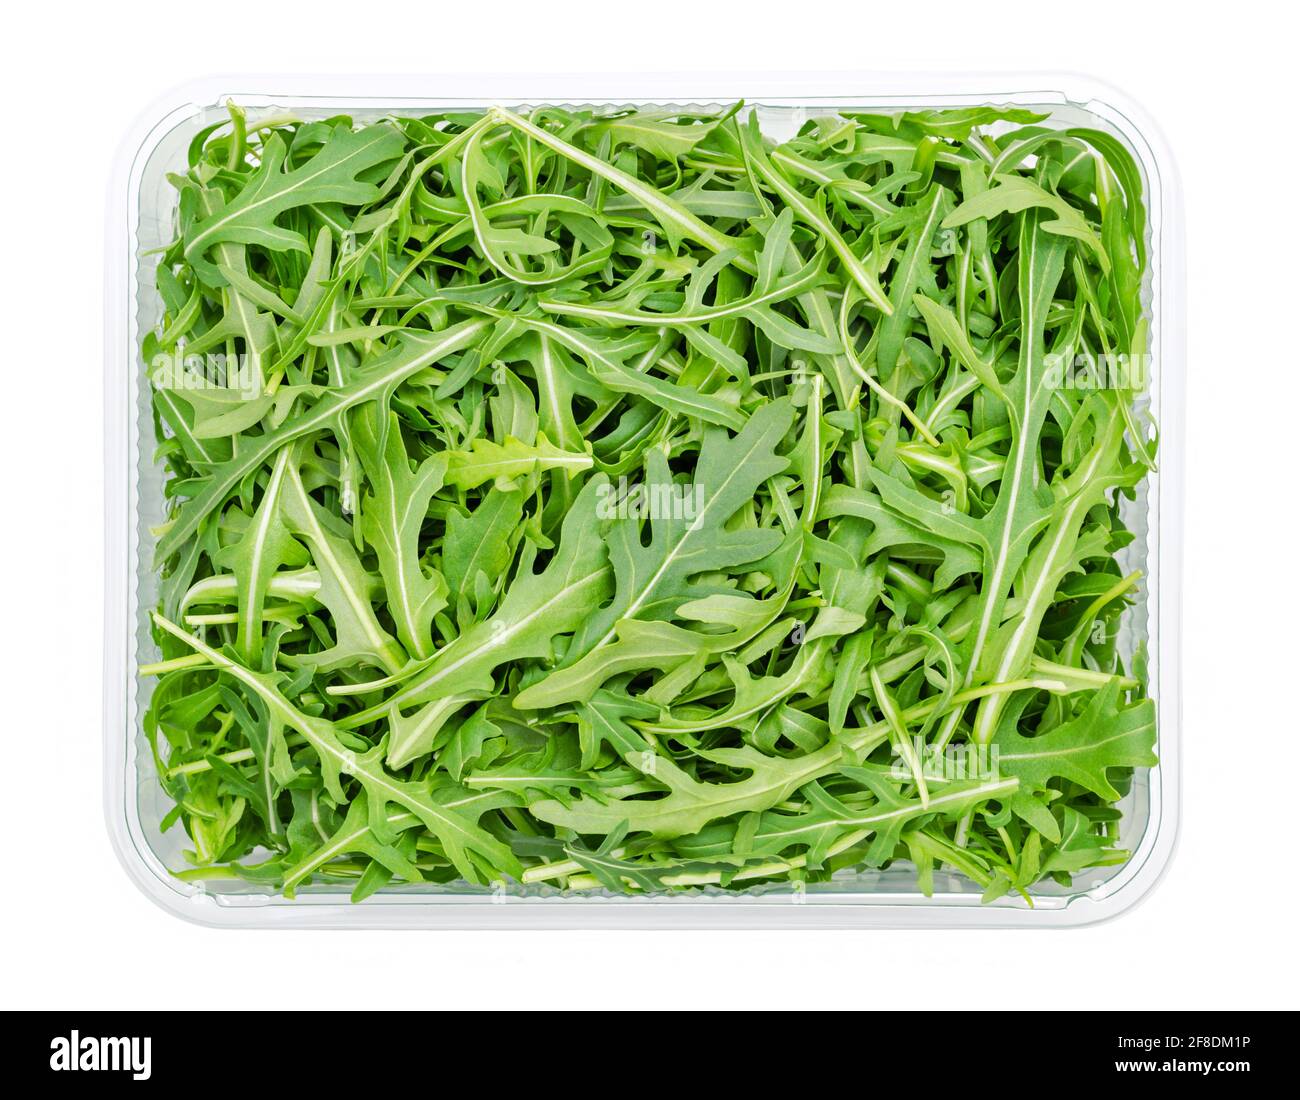 Frische Rucola, roher Rucola-Salat in Plastikbehälter, von oben. Gartenrakete, Eruca vesicaria, verwendet als Blattgemüse, Salatgemüse und Garnierung. Stockfoto